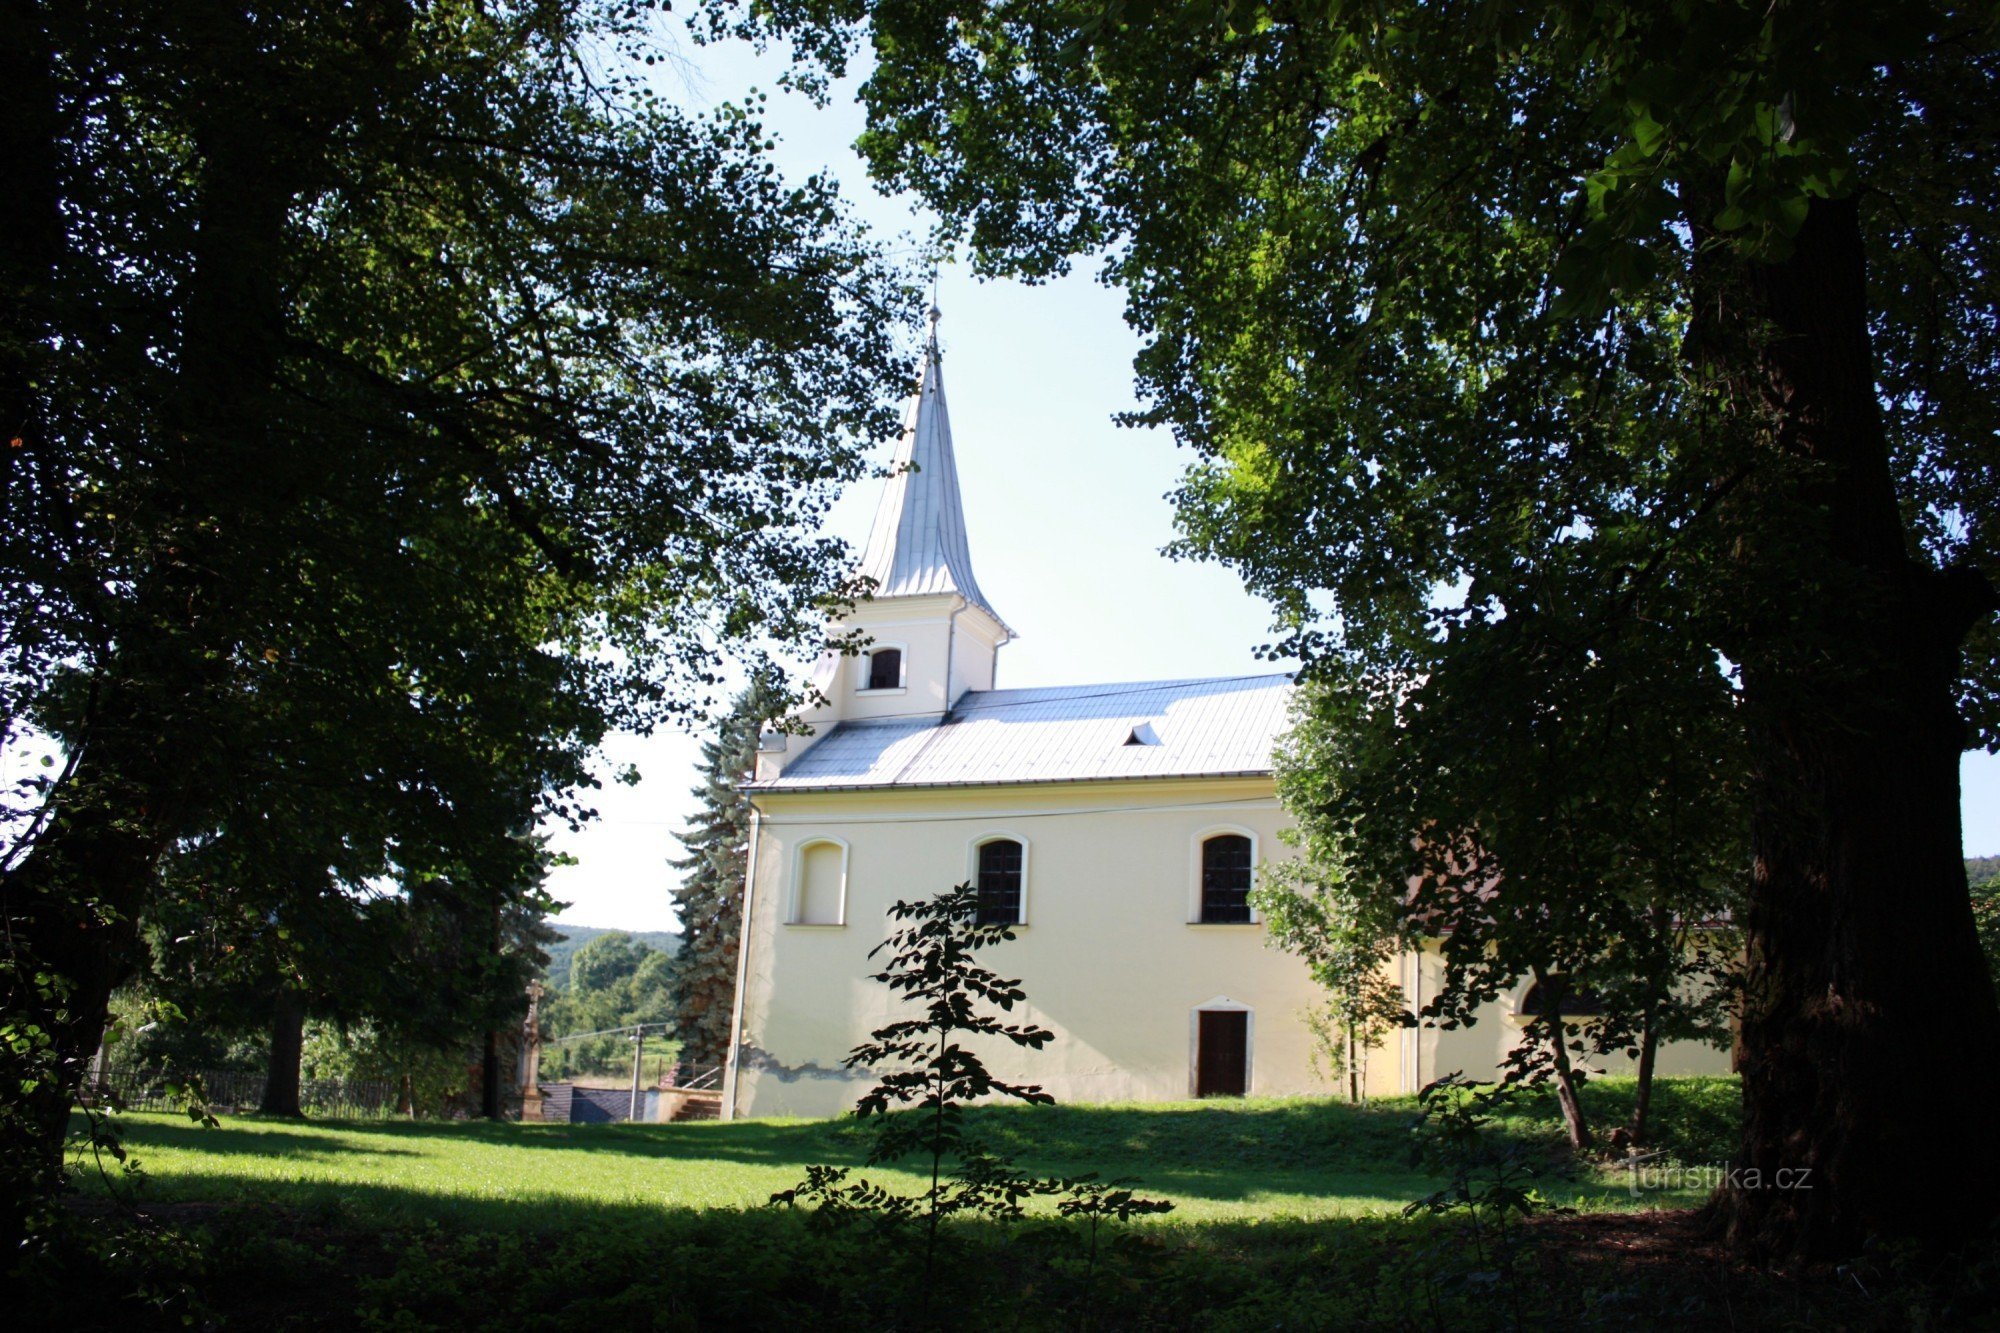 Κοντά στο κάστρο βρίσκεται η εκκλησία του Αγ. Κρίνος